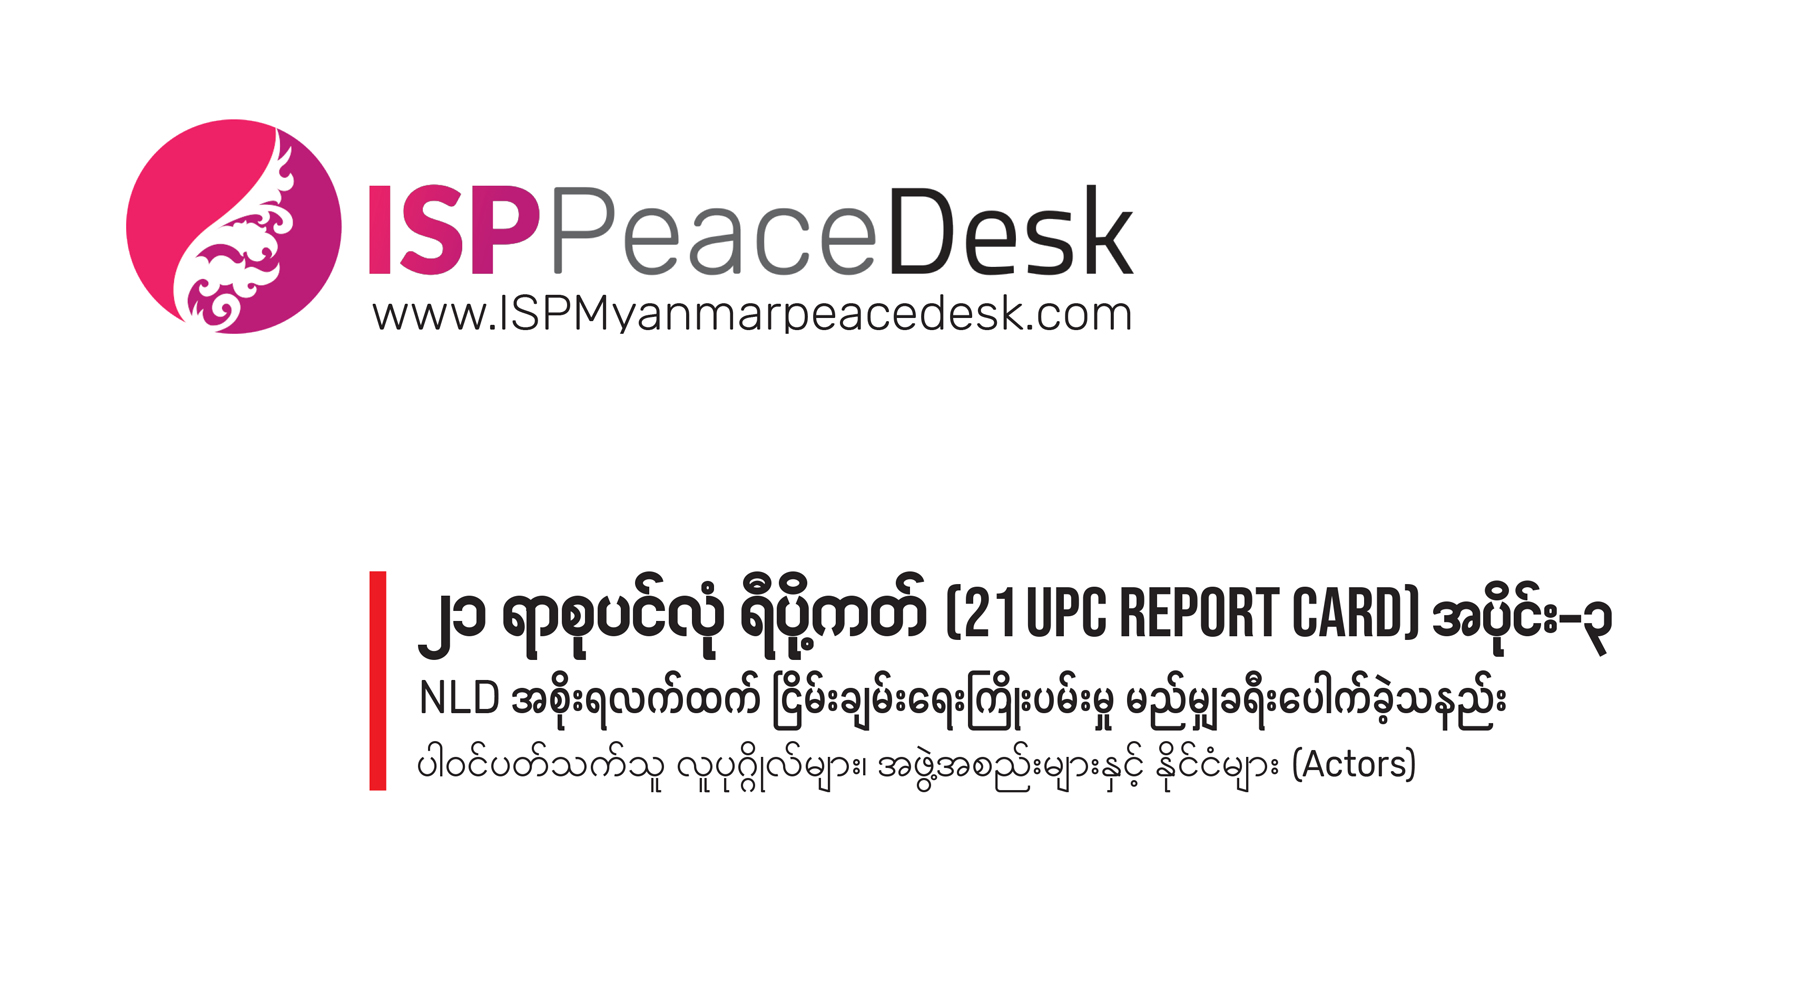 ၂၁ ရာစုပင်လုံ ရီပို့ကတ် (21 UPC Report Card) အပိုင်း ၃                            NLD အစိုးရလက်ထက် ငြိမ်းချမ်းရေးကြိုးပမ်းမှု မည်မျှ ခရီးပေါက်ခဲ့သနည်း